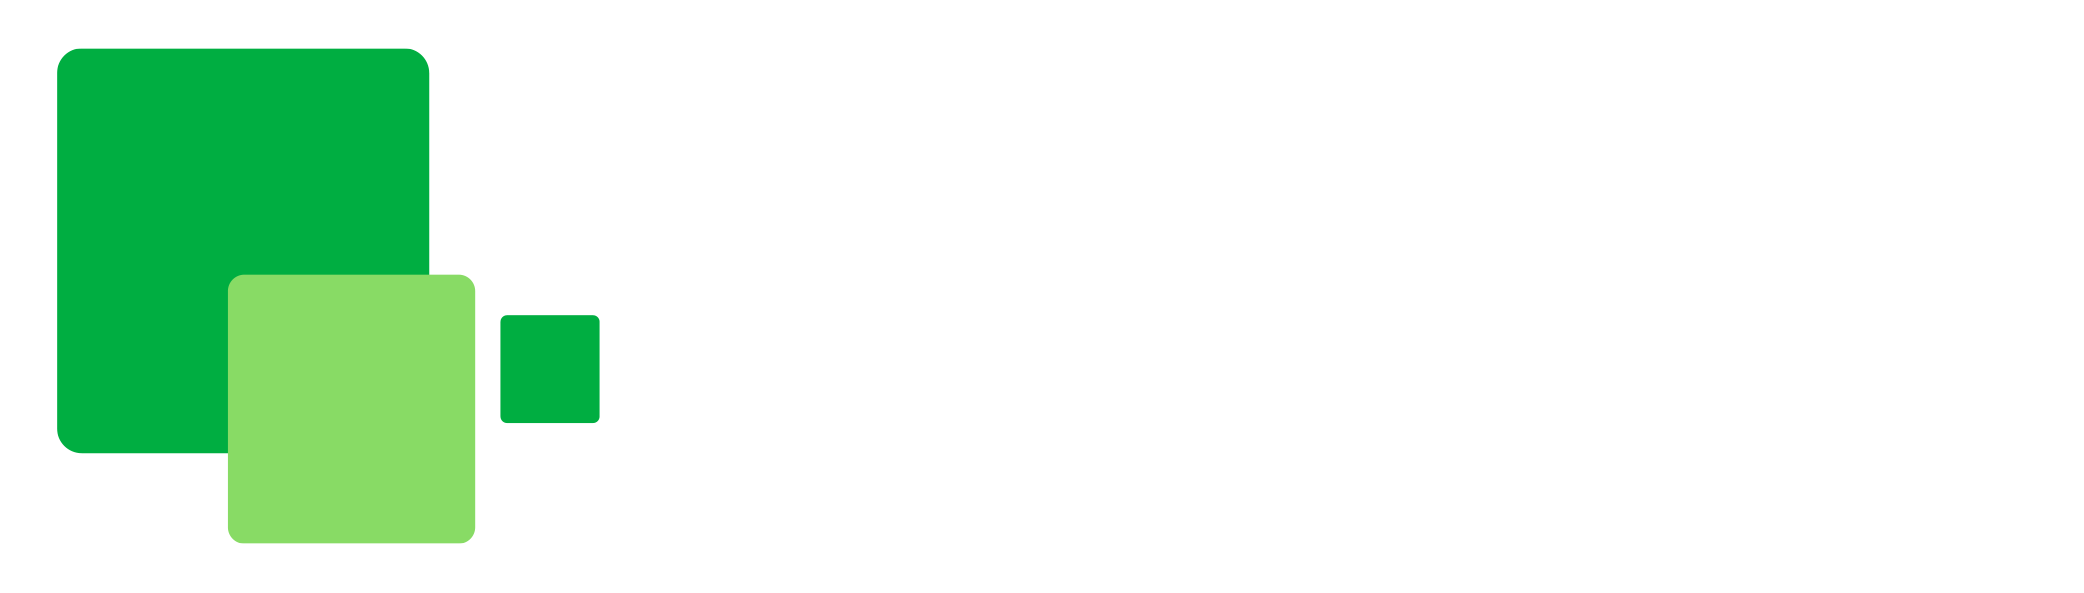 Bio-Imagenes Group - Servicio de Diagnóstico por Imágenes